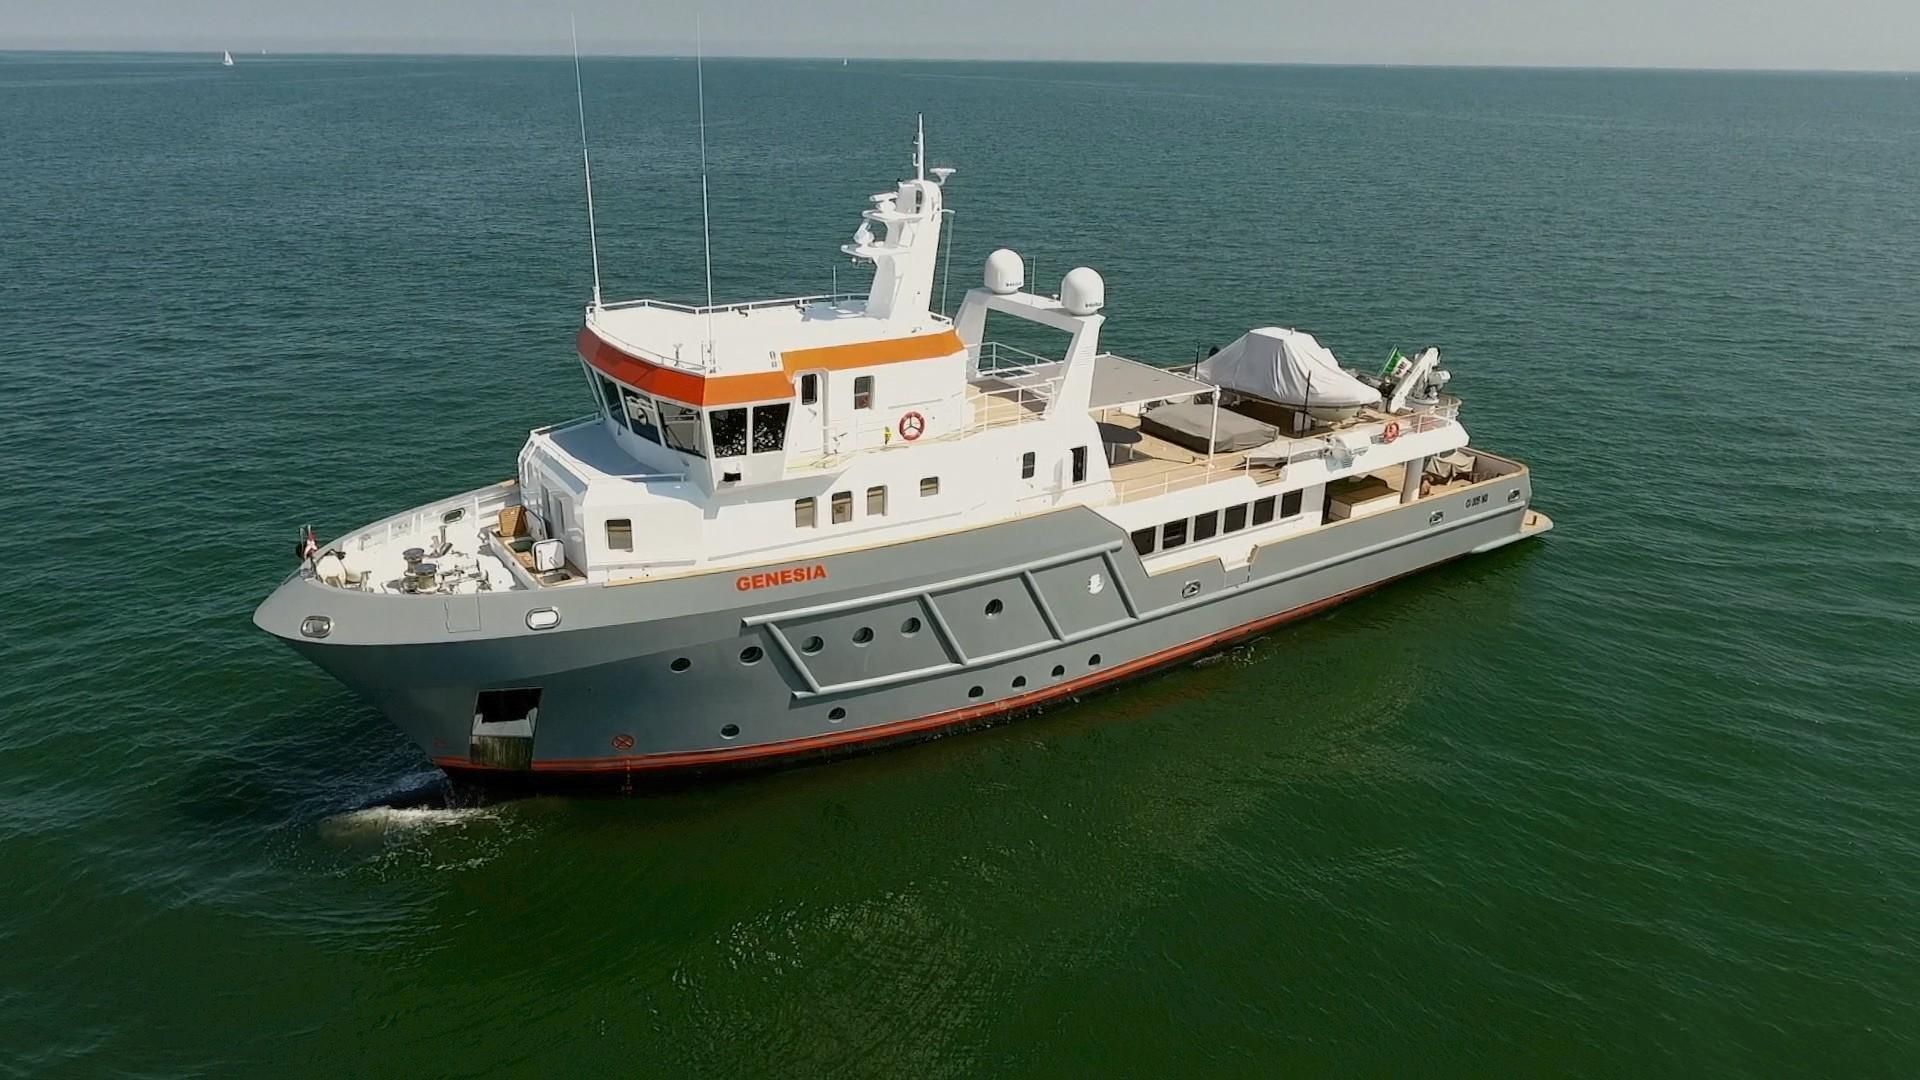 2019 ocean king 130 custom power boat for sale - www